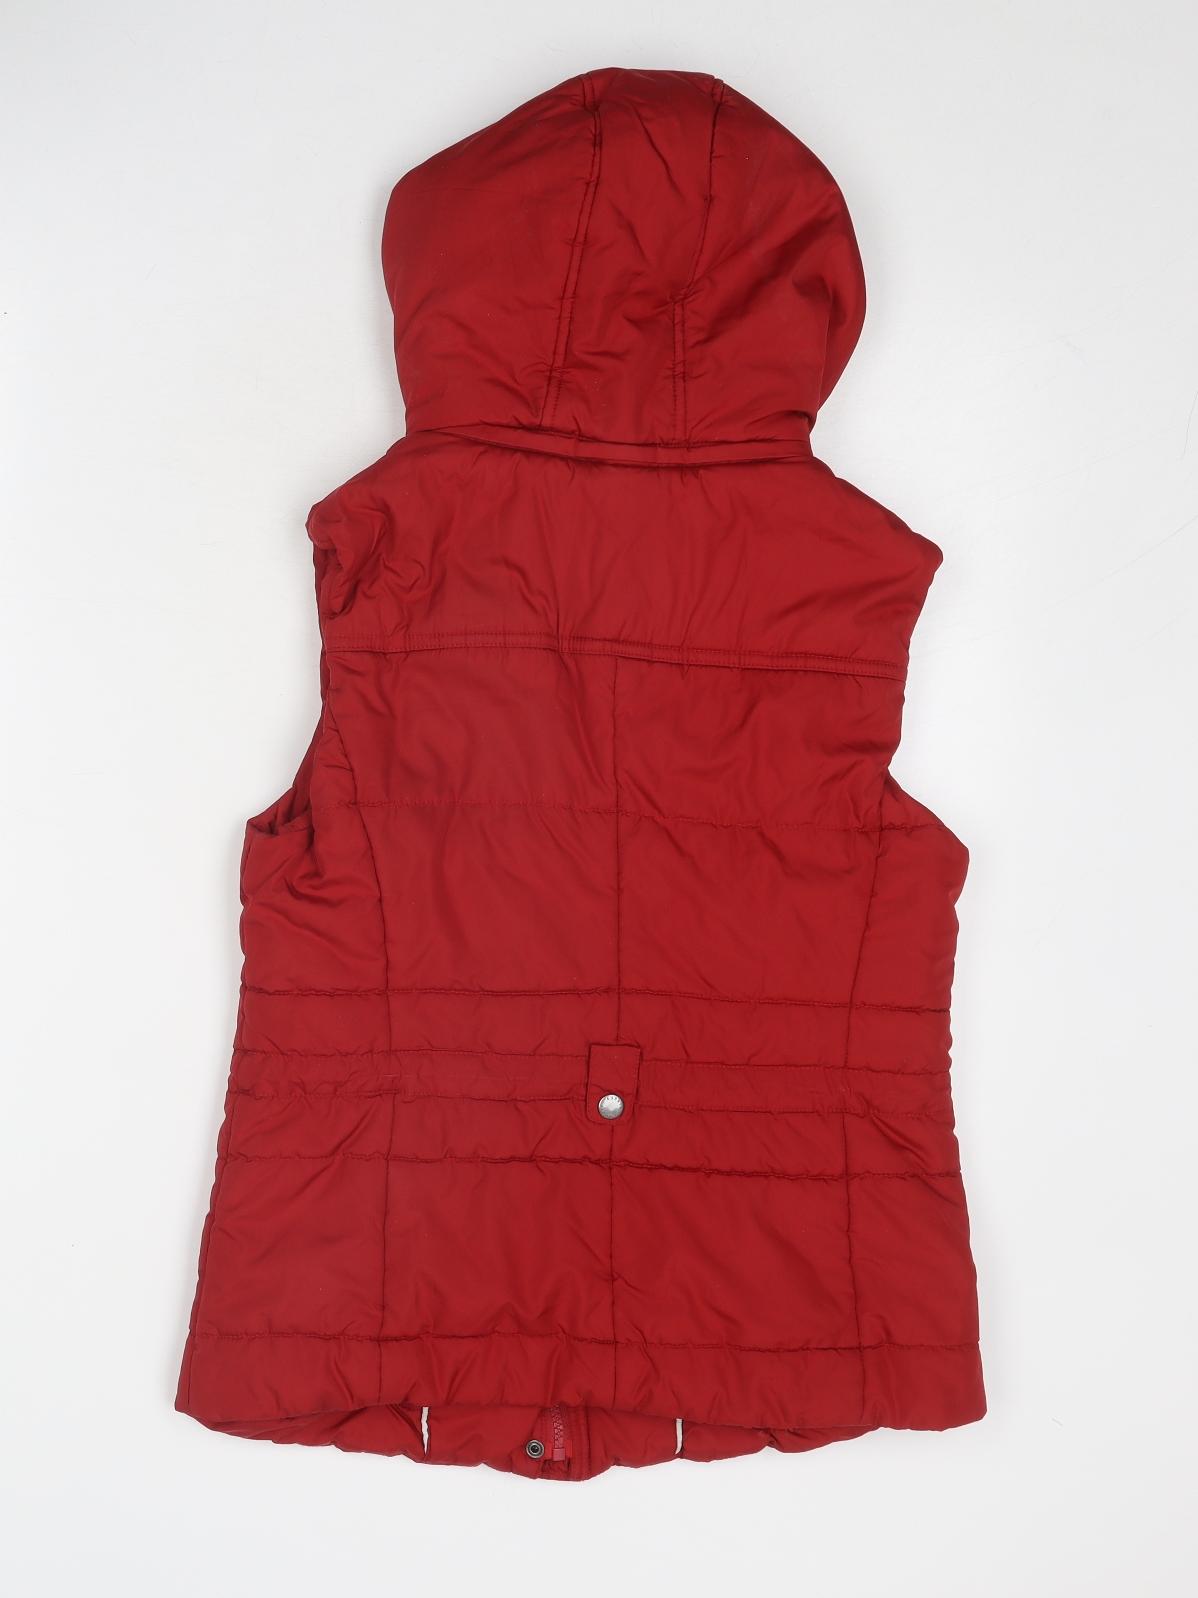 Esprit Womens Red Gilet Jacket Size 10 Zip